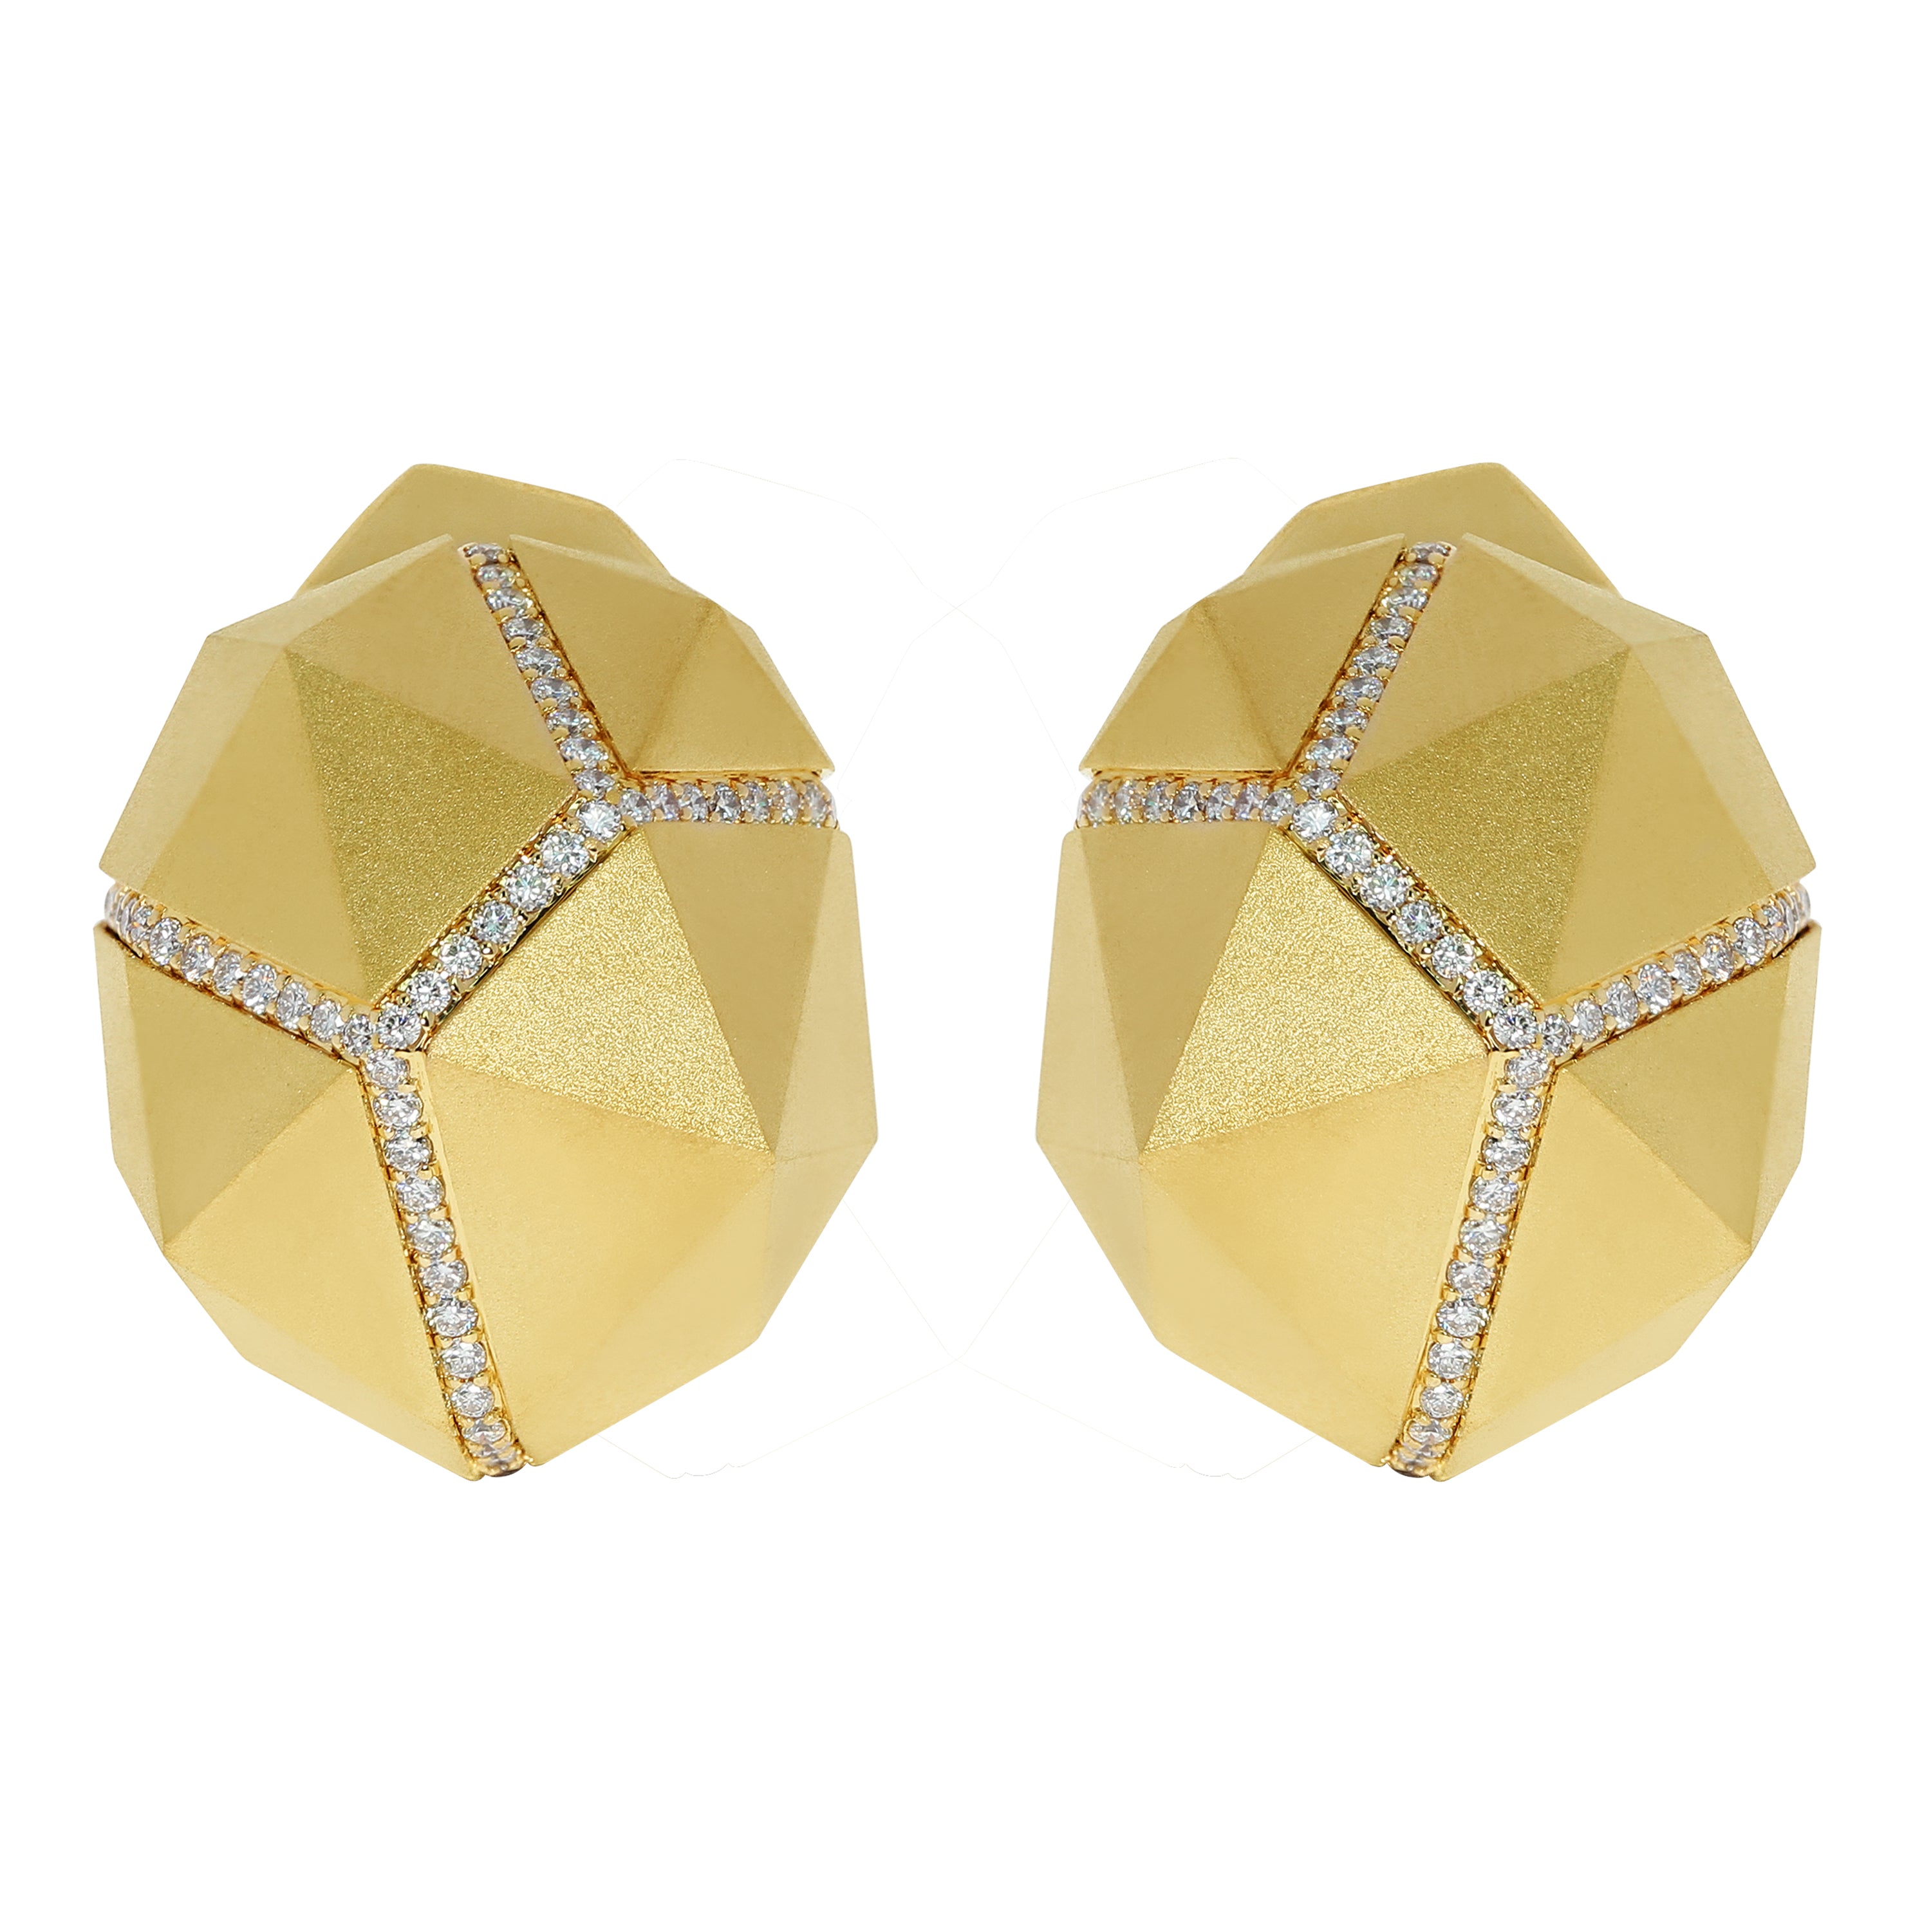 E 0191-0, 18K Yellow Gold, Diamonds Earrings